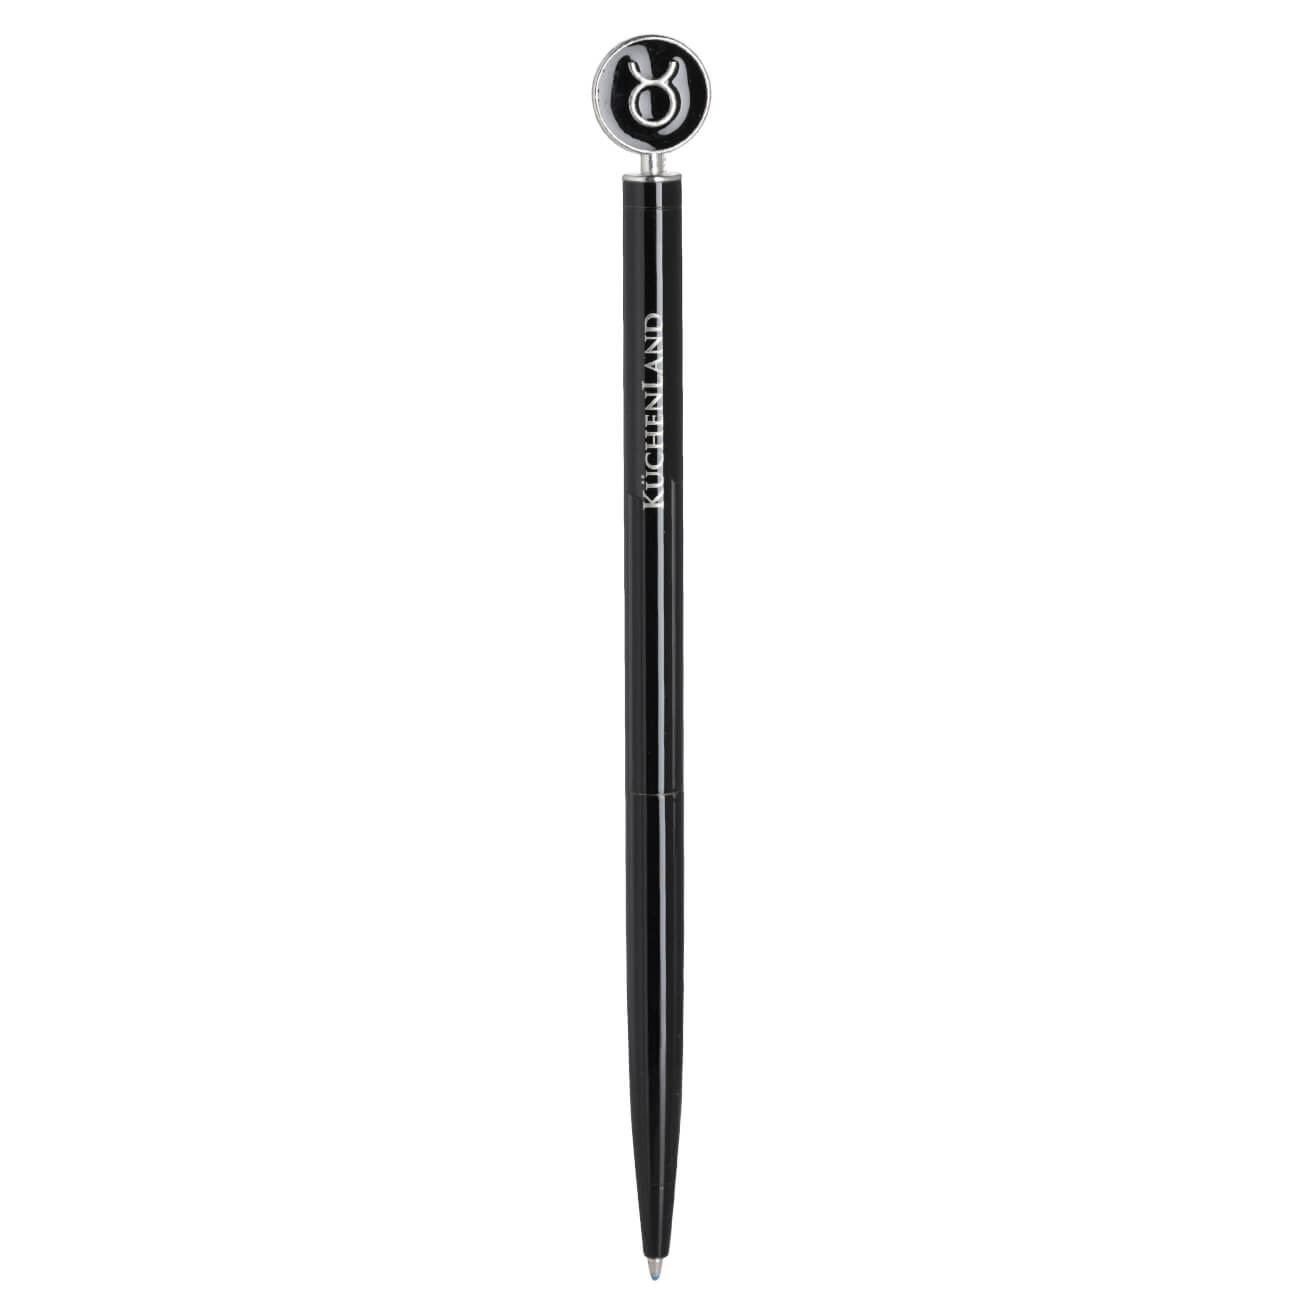 Ручка шариковая, 15 см, с фигуркой, сталь, черно-серебристая, Телец, Zodiac изображение № 1